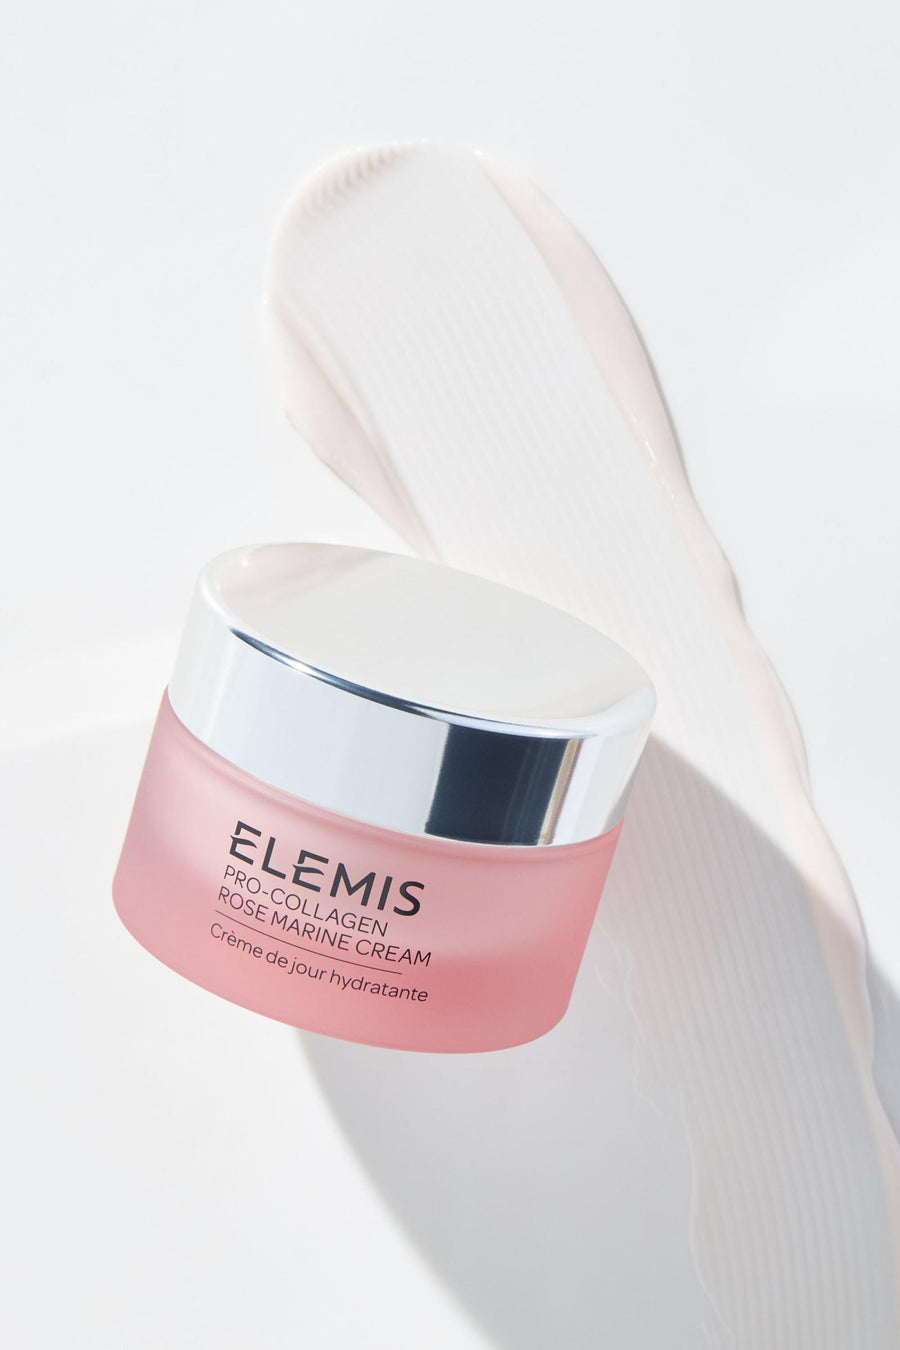 ELEMIS Pro-Collagen Rose Marine Cream